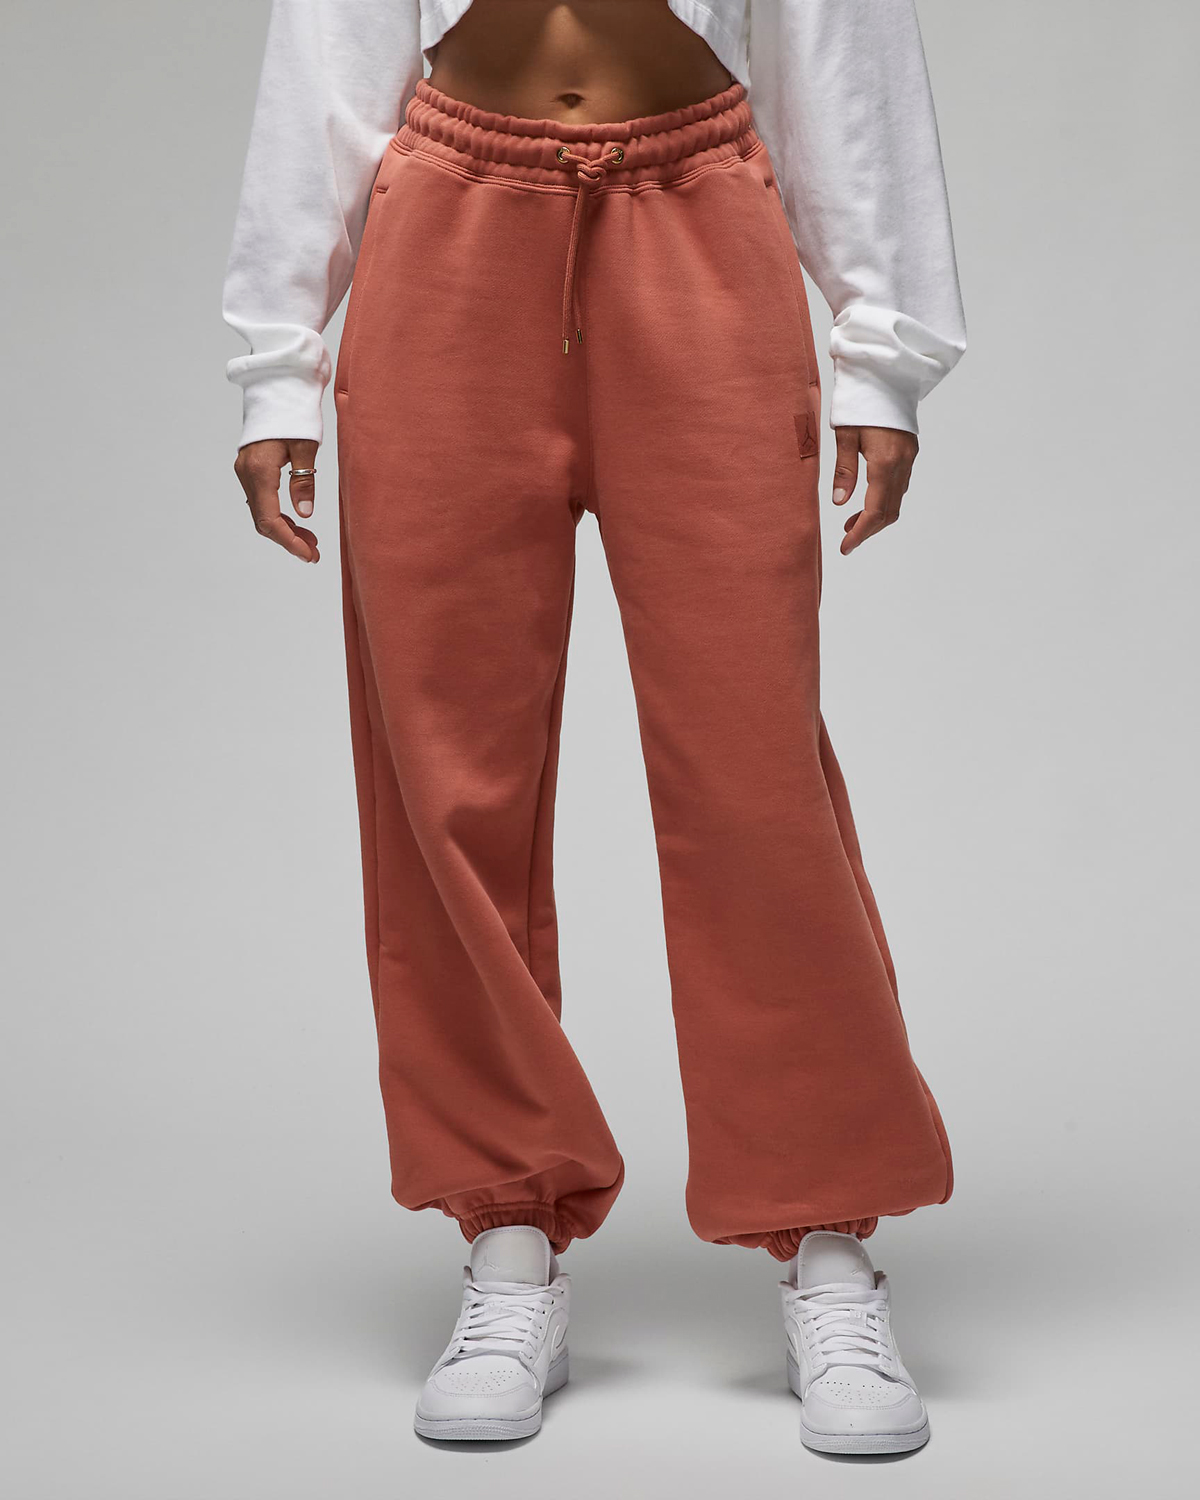 Jordan-Flight-Fleece-Womens-Pants-Sky-J-Orange